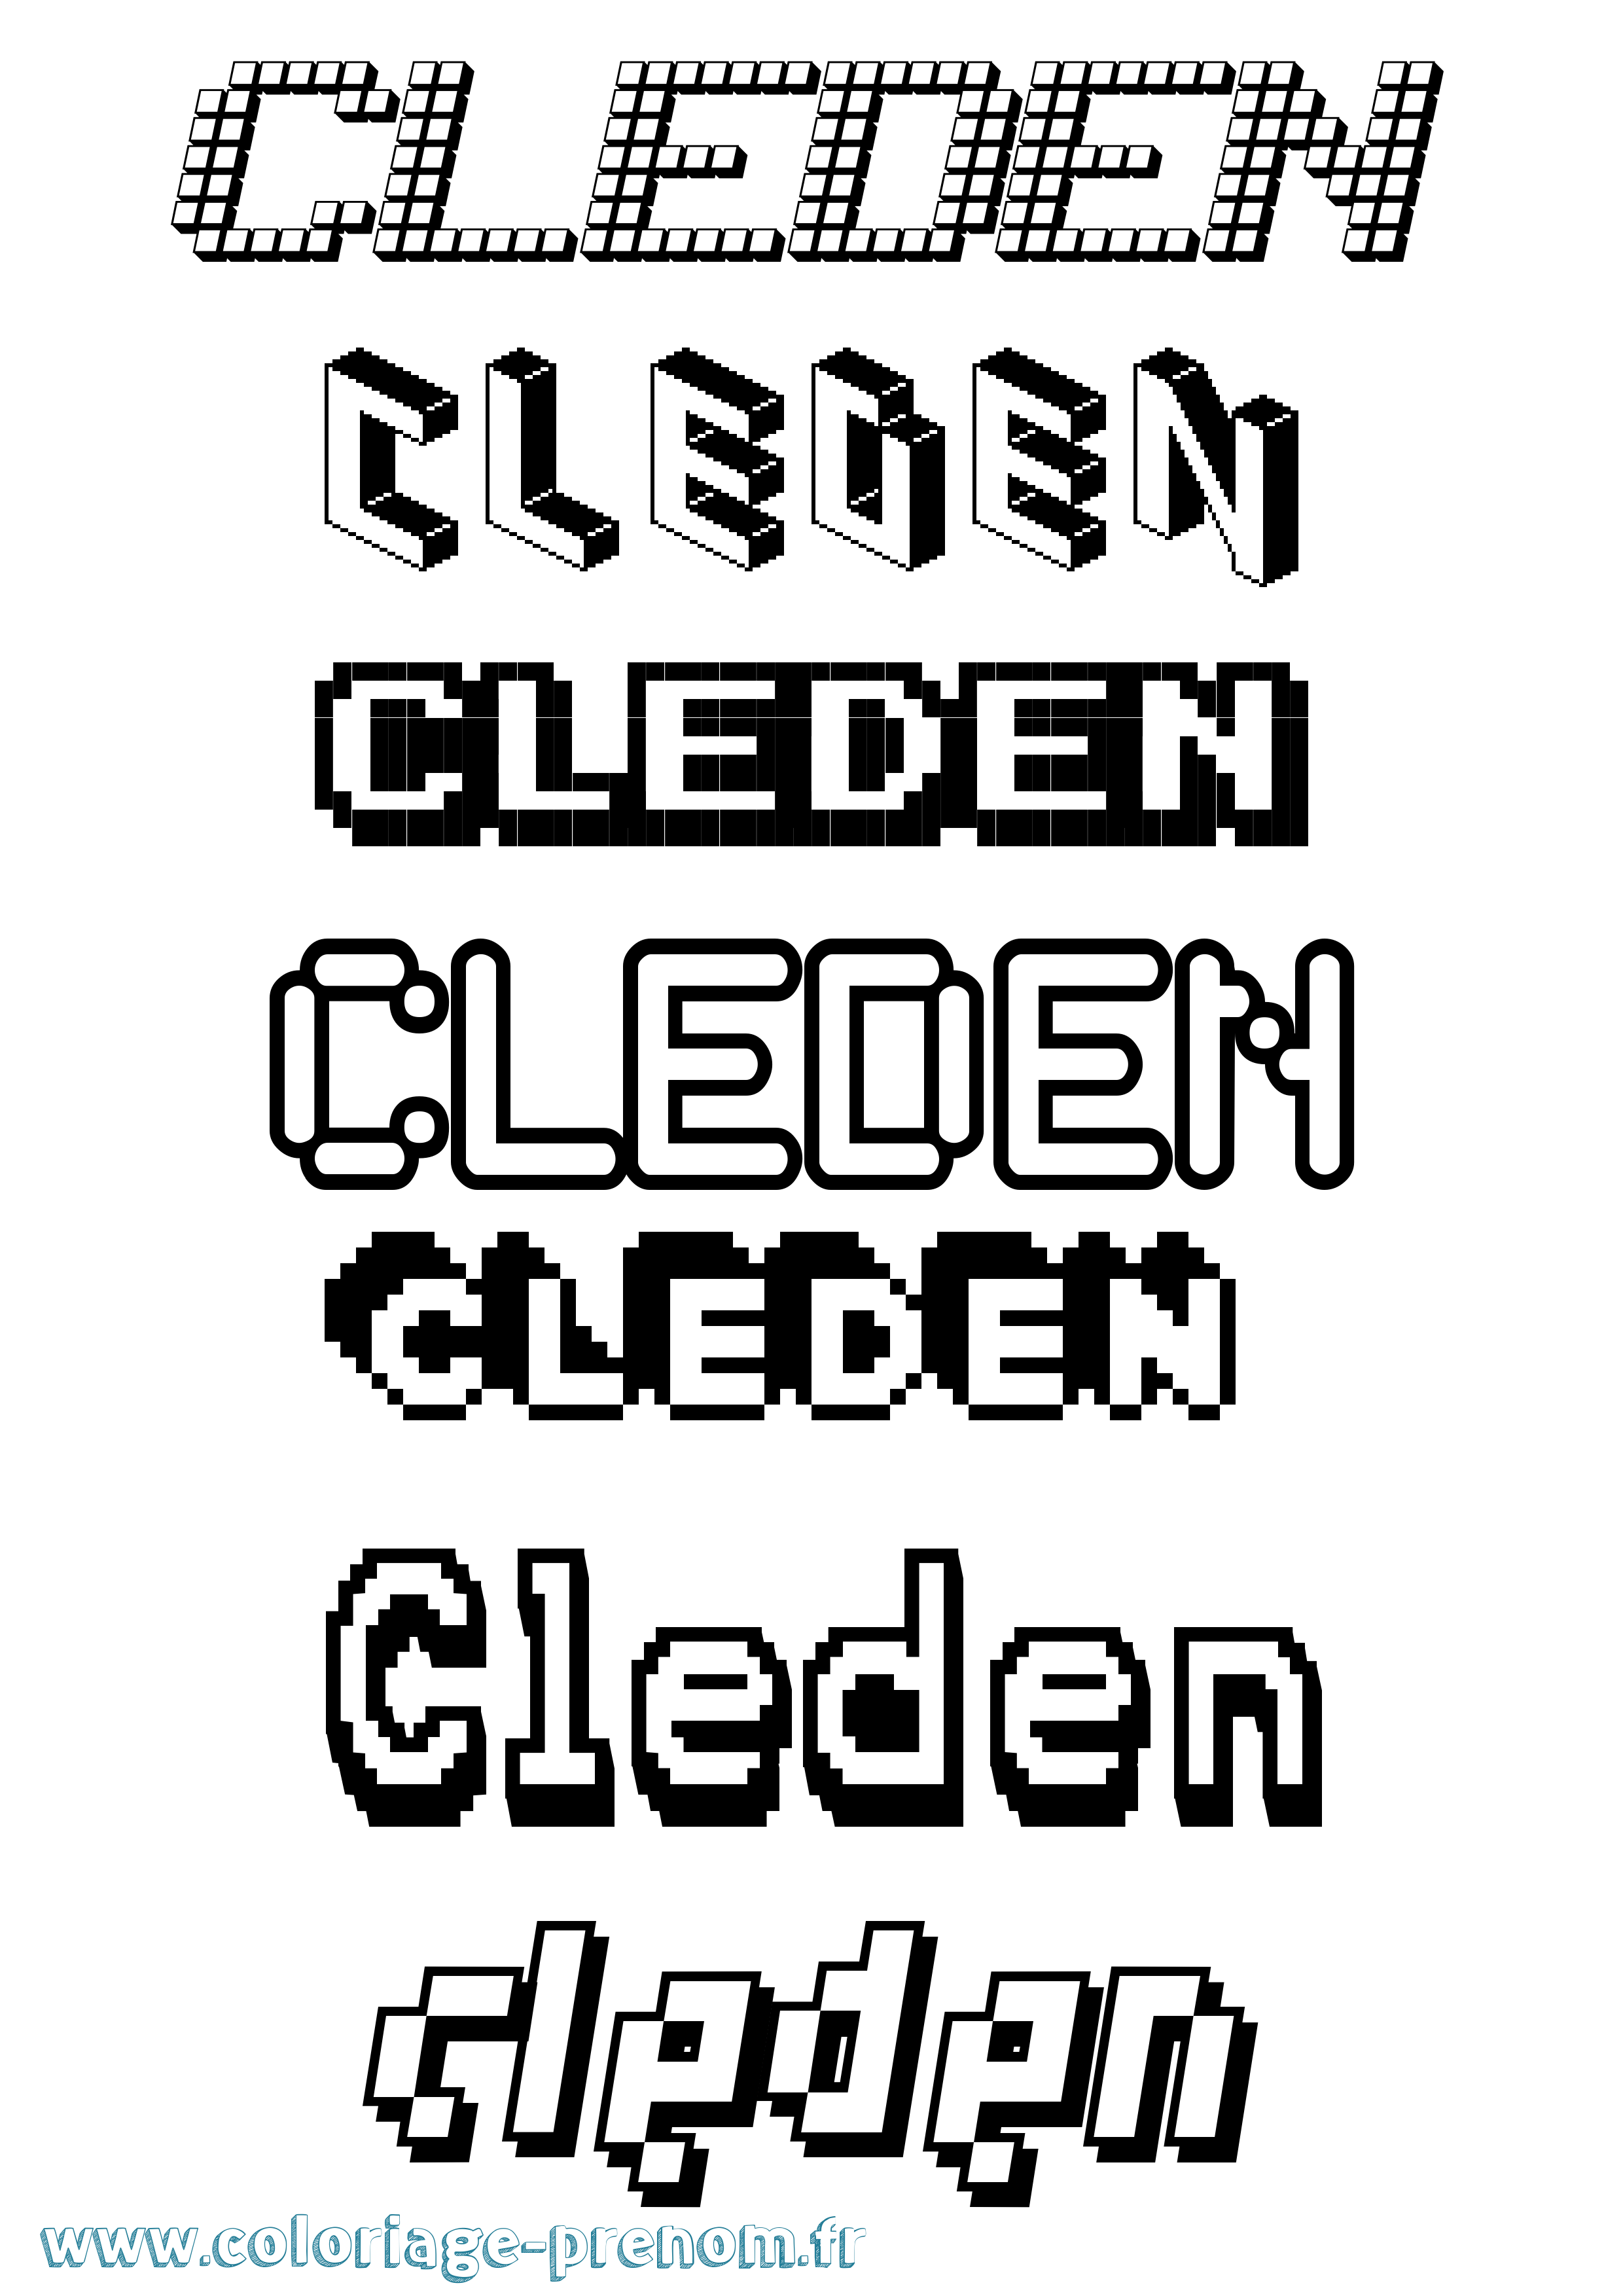 Coloriage prénom Cleden Pixel